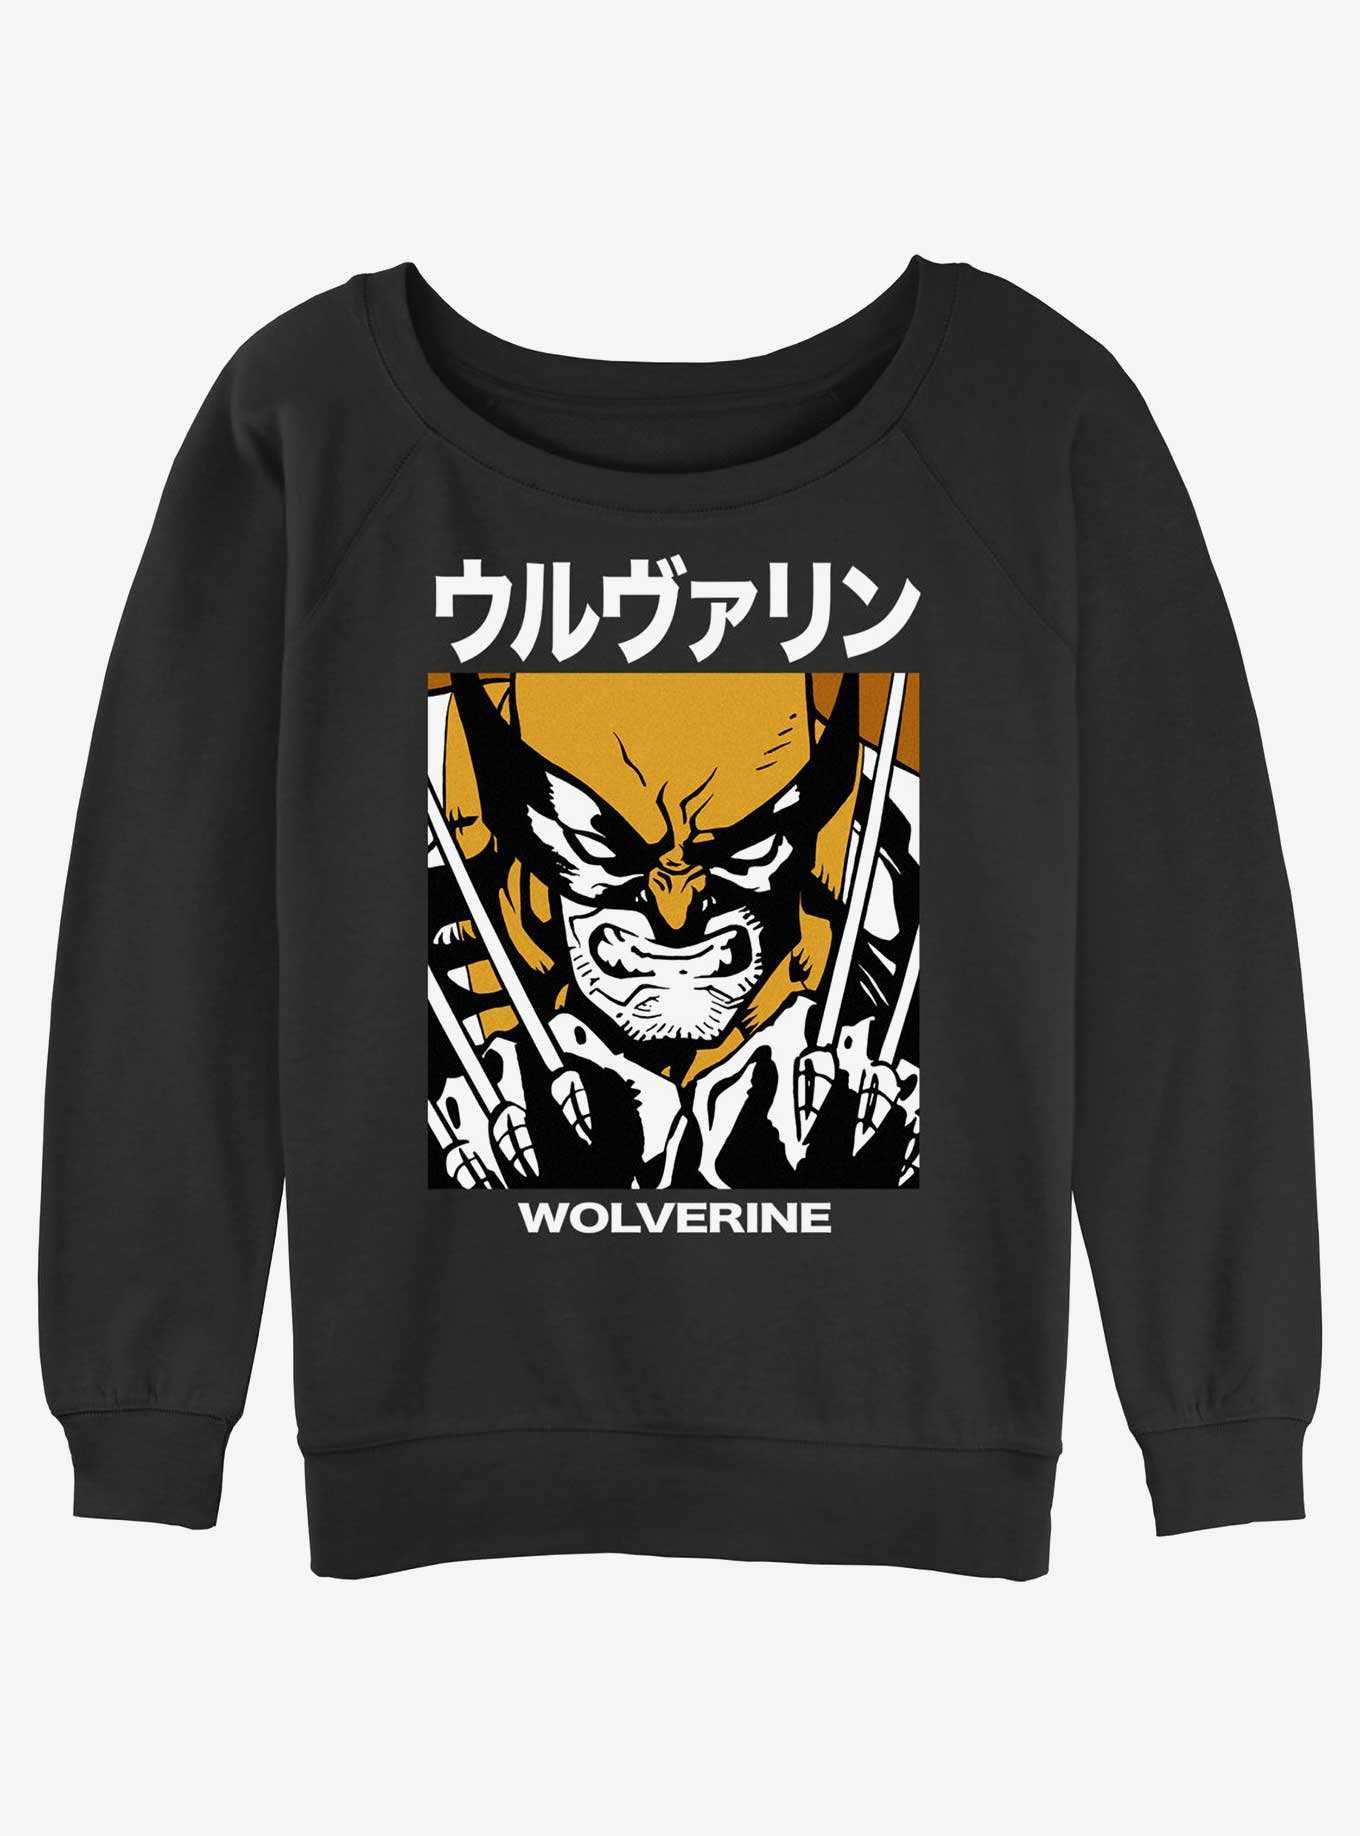 Wolverine Kanji Rage Girls Slouchy Sweatshirt, , hi-res